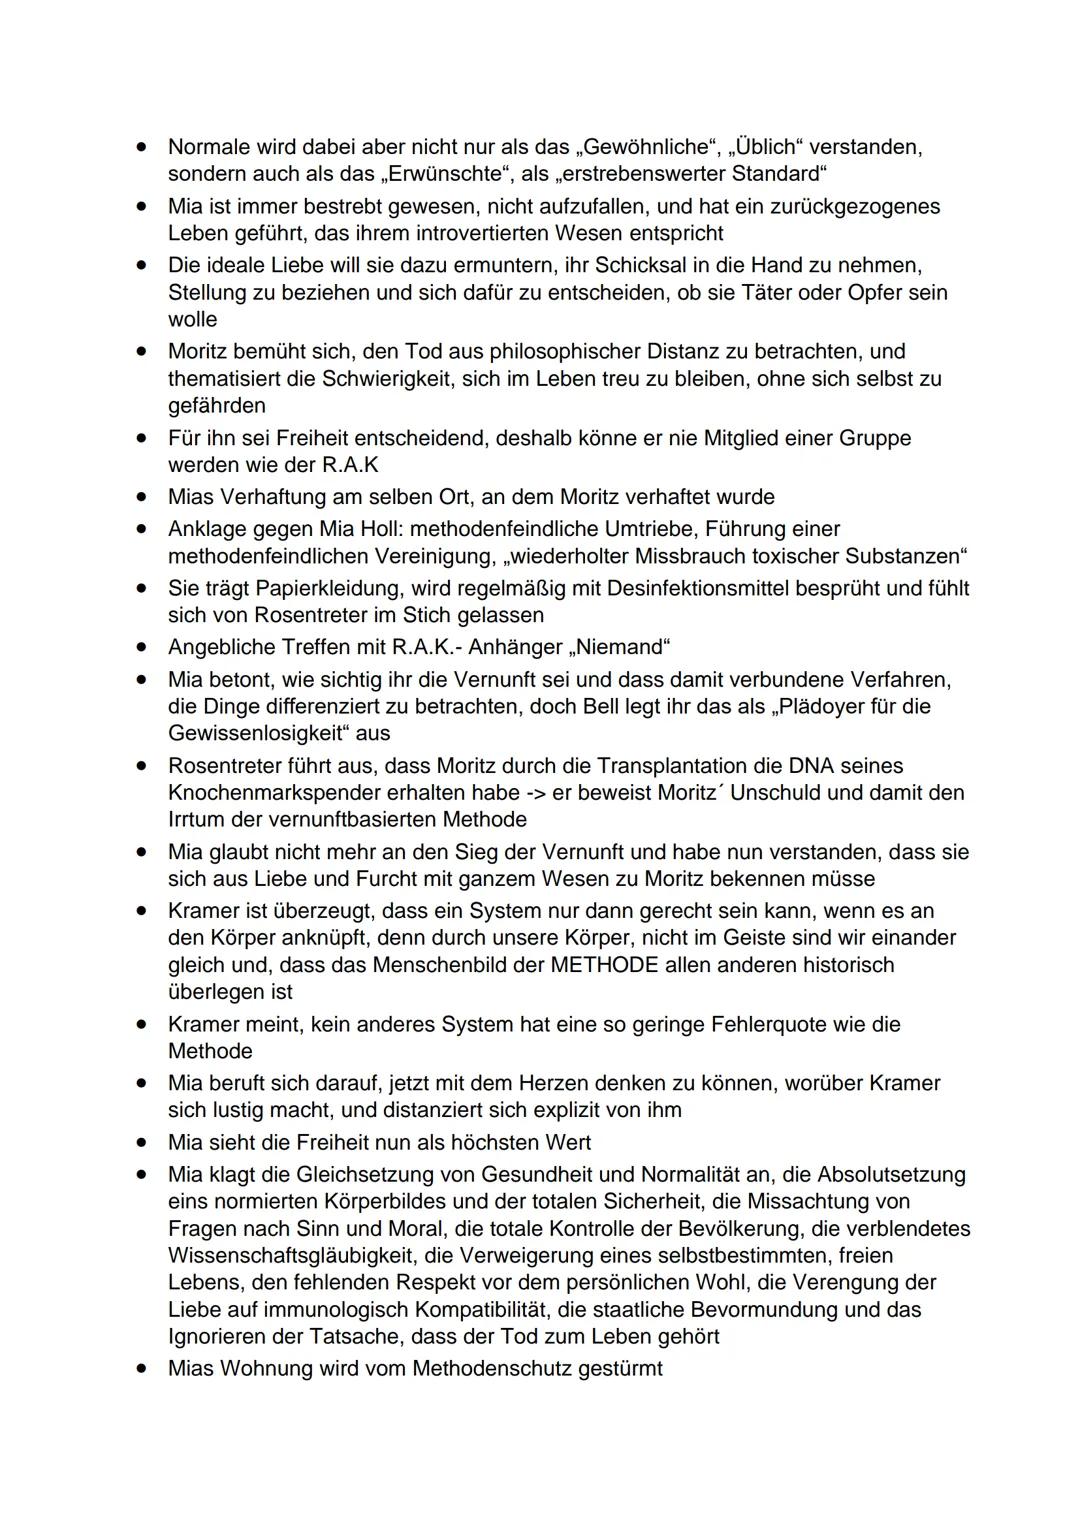 Zusammenfassung
●
●
●
• Verhandlung wird durch Journalist Heinrich Kramer unterbrochen -> interessiert am
Fall Mia Holl
•
Bürger müssen Schl